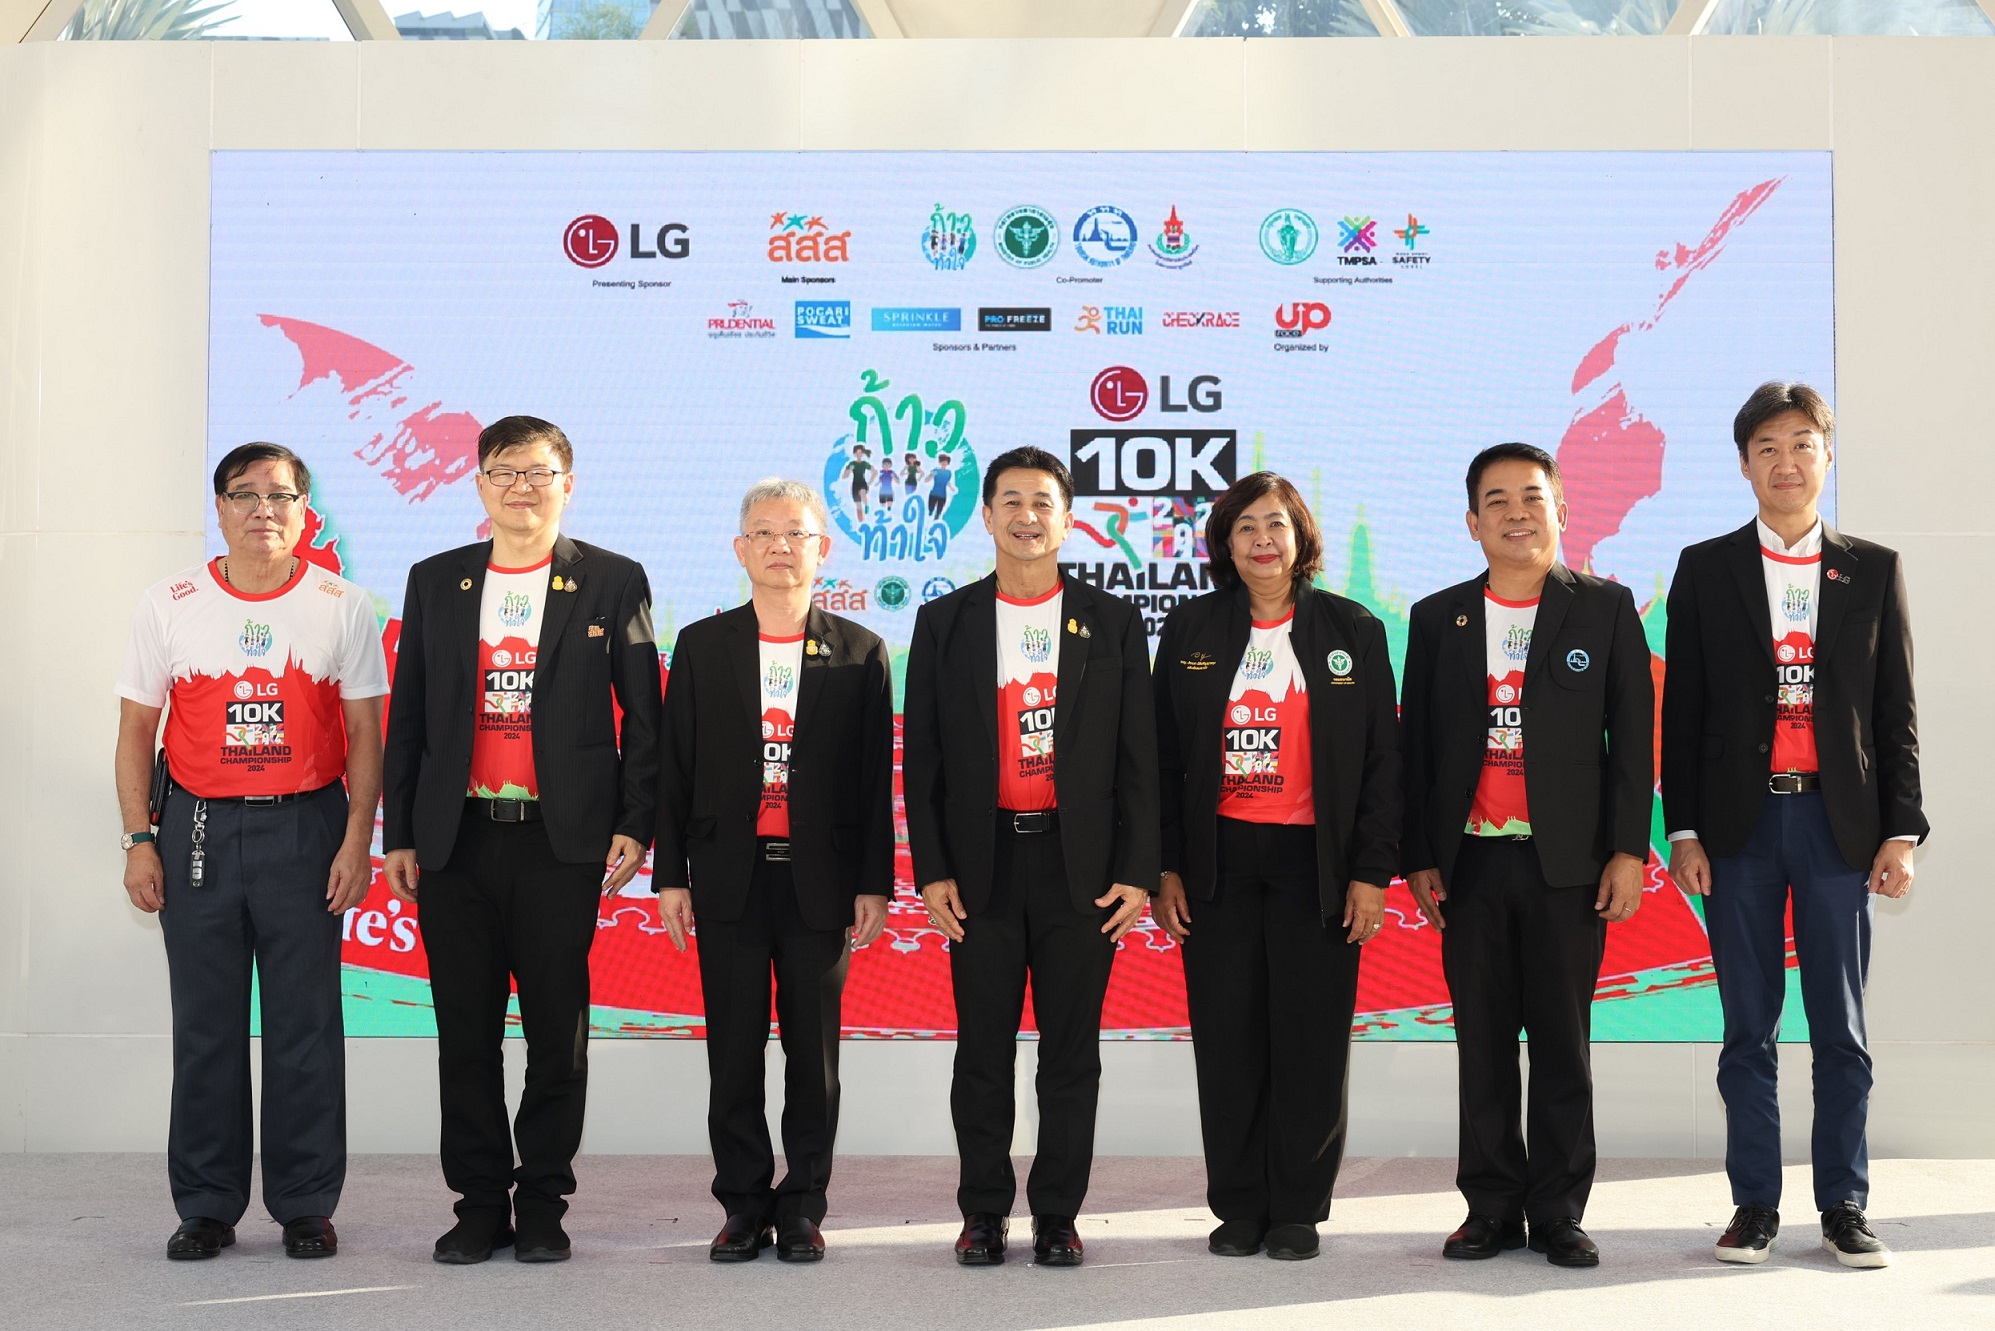 แอลจี จับมือ สมาคมก้าวท้าใจ จัดการแข่งขันวิ่ง ‘ก้าวท้าใจ 10K Thailand Championship 2024’ สุดยิ่งใหญ่ พร้อมเดินหน้ายกระดับมาตรฐานการแข่งขันสู่งานเดิน-วิ่งระดับสากล